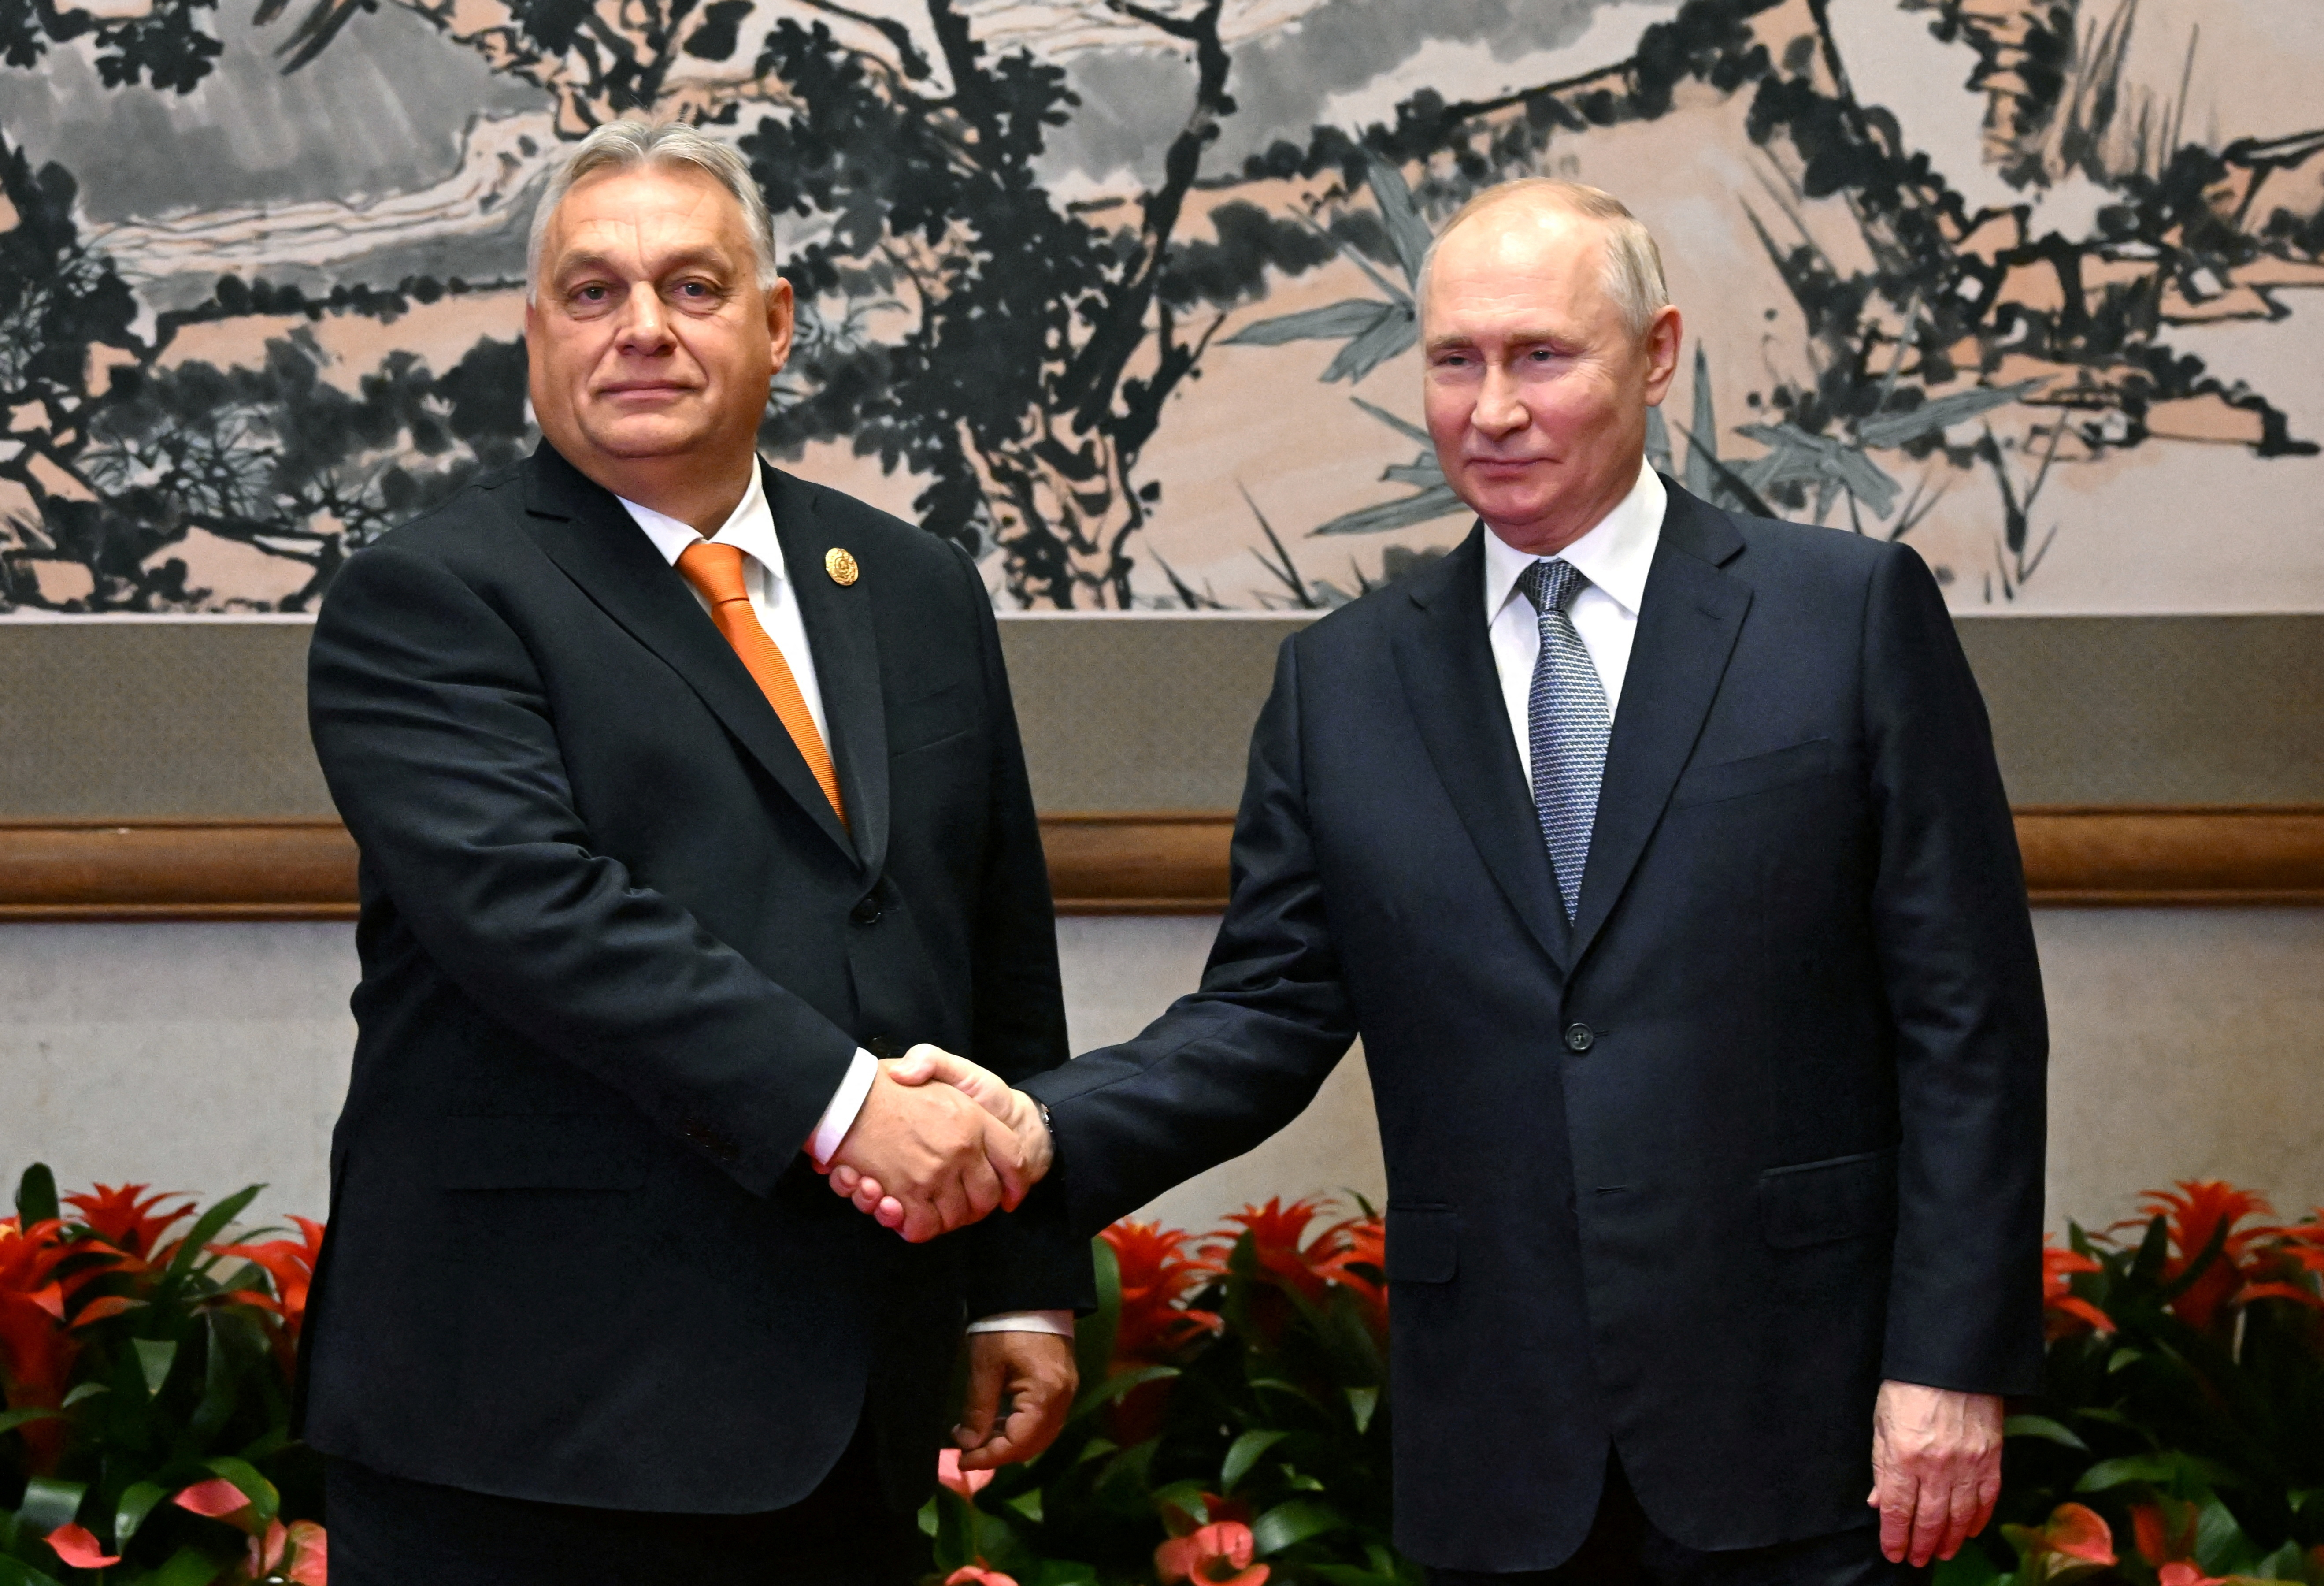 ハンガリー首相、プーチン氏再選に祝意 ＥＵと歩調合わせず - ロイター (Reuters Japan)